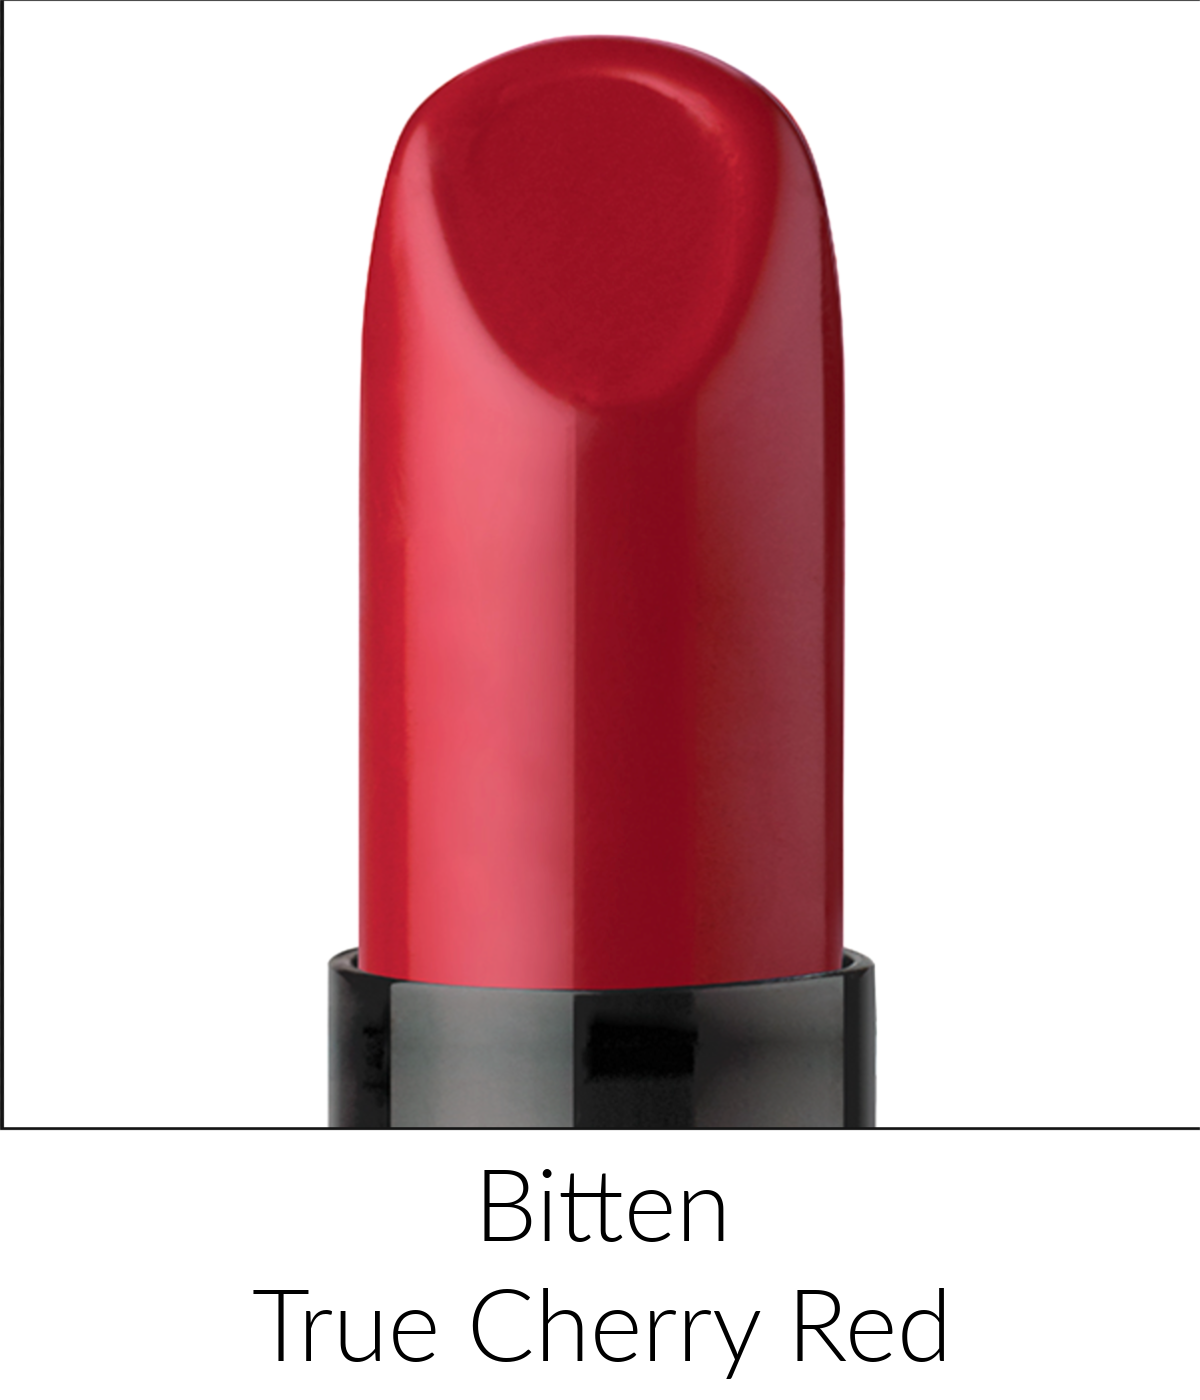 LTW Bitten red cherry lipstick